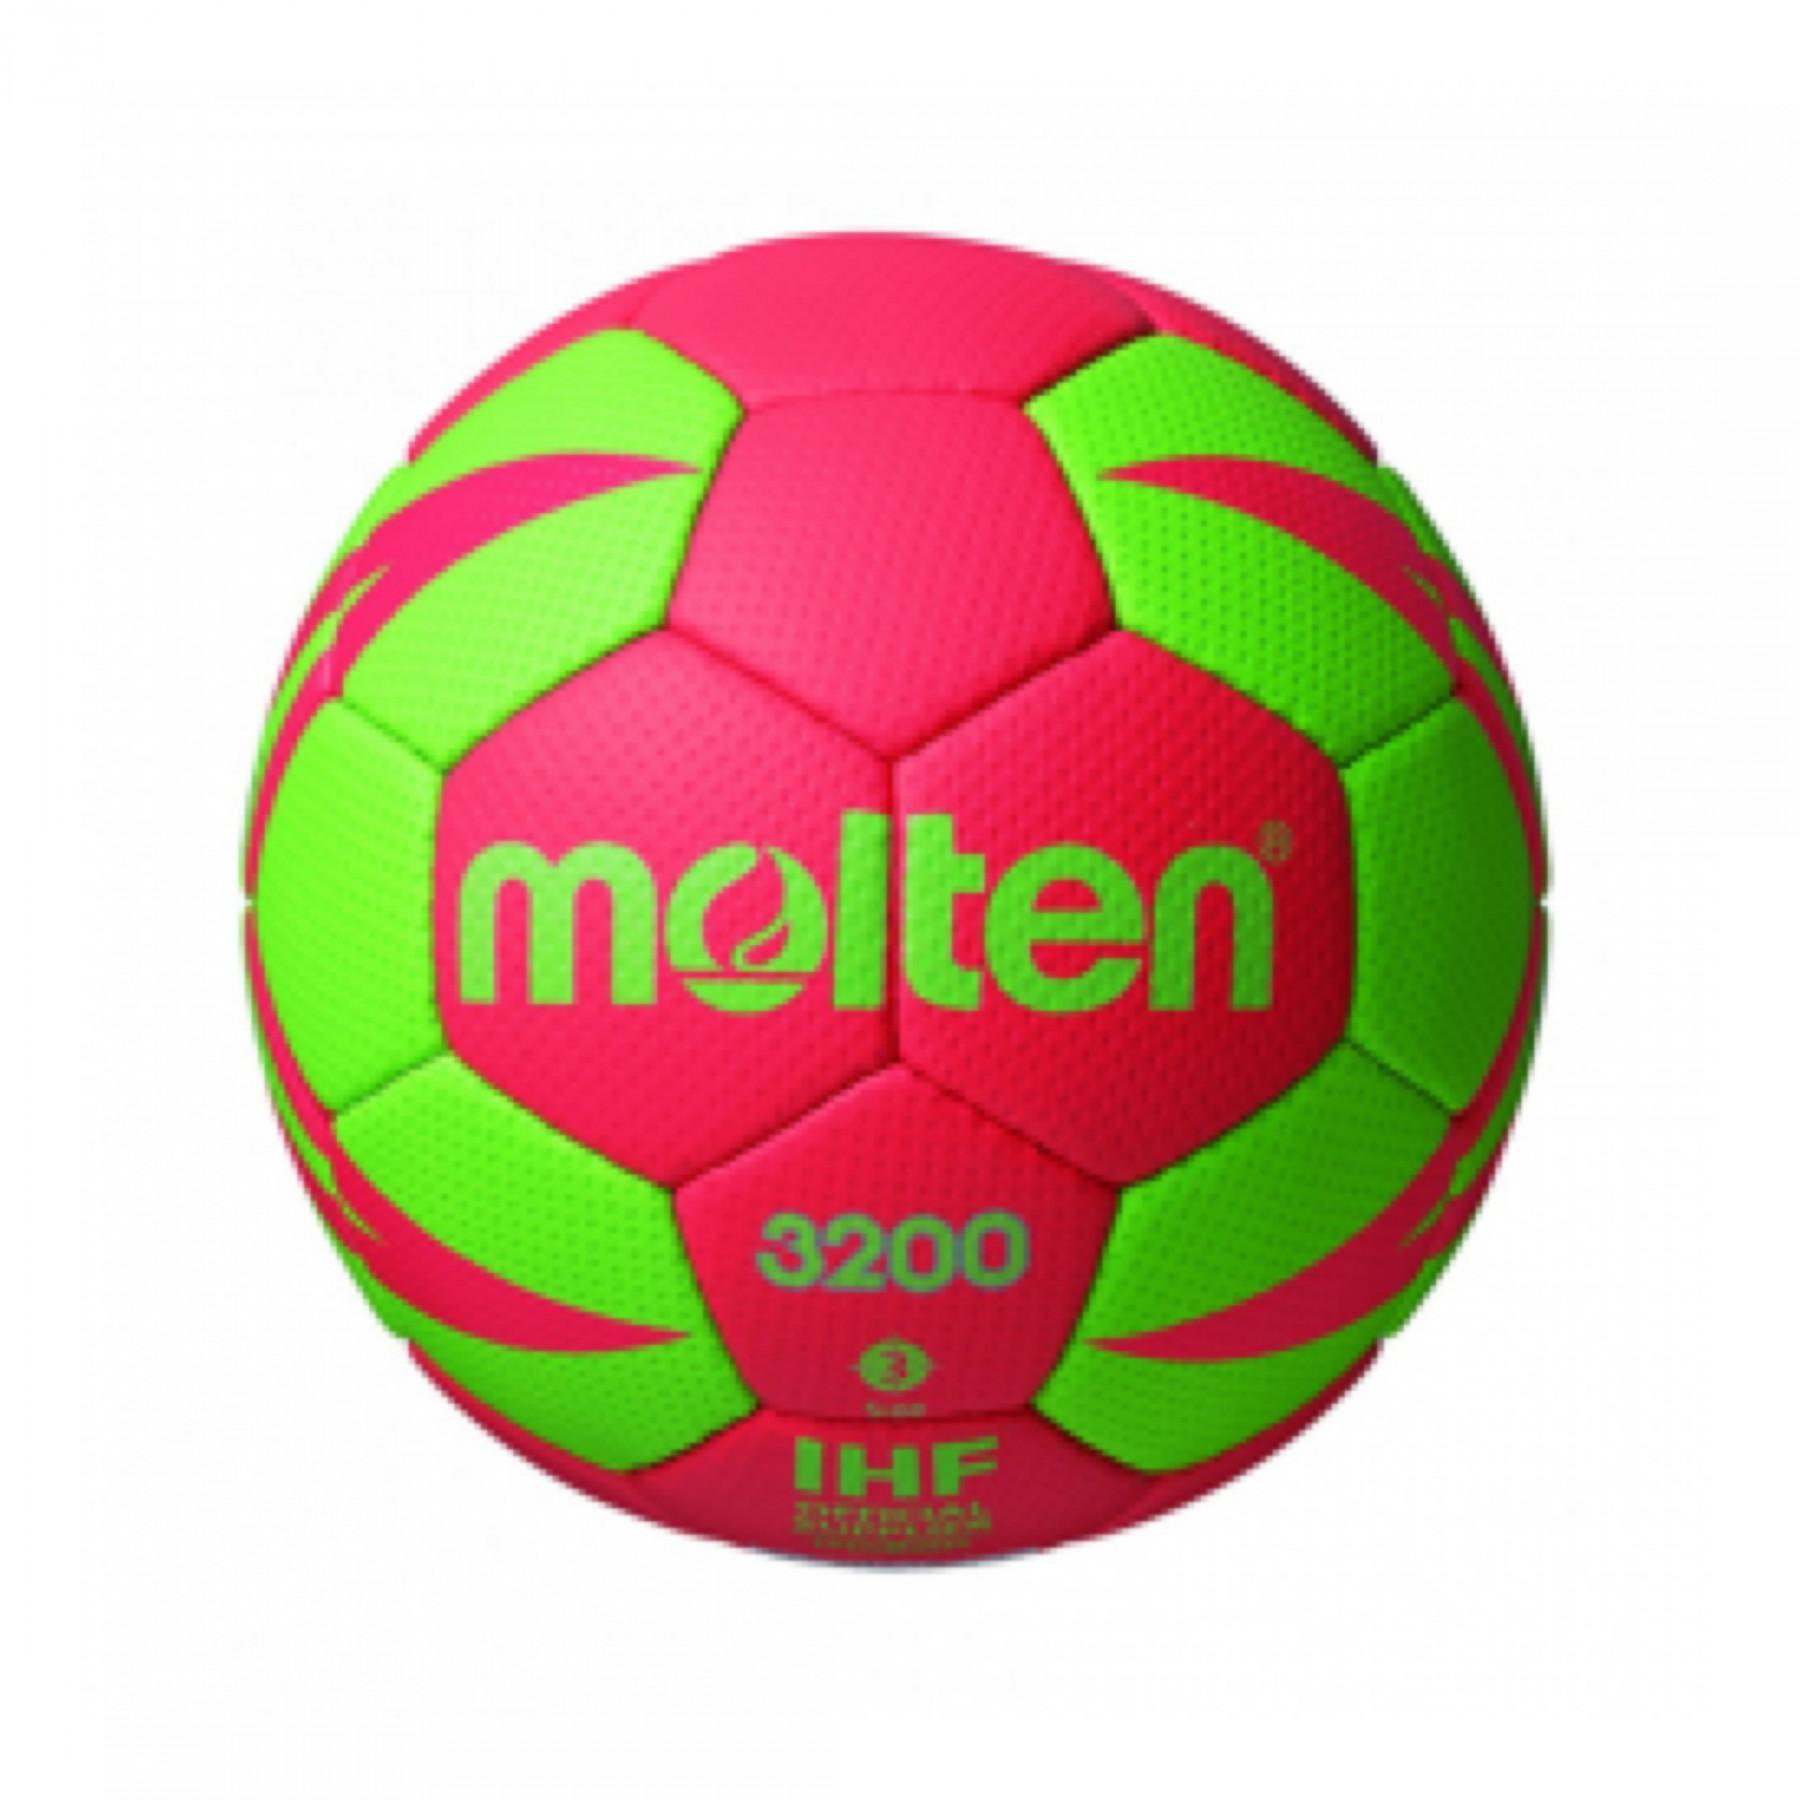 Pallone da pallamano Molten Hx3200